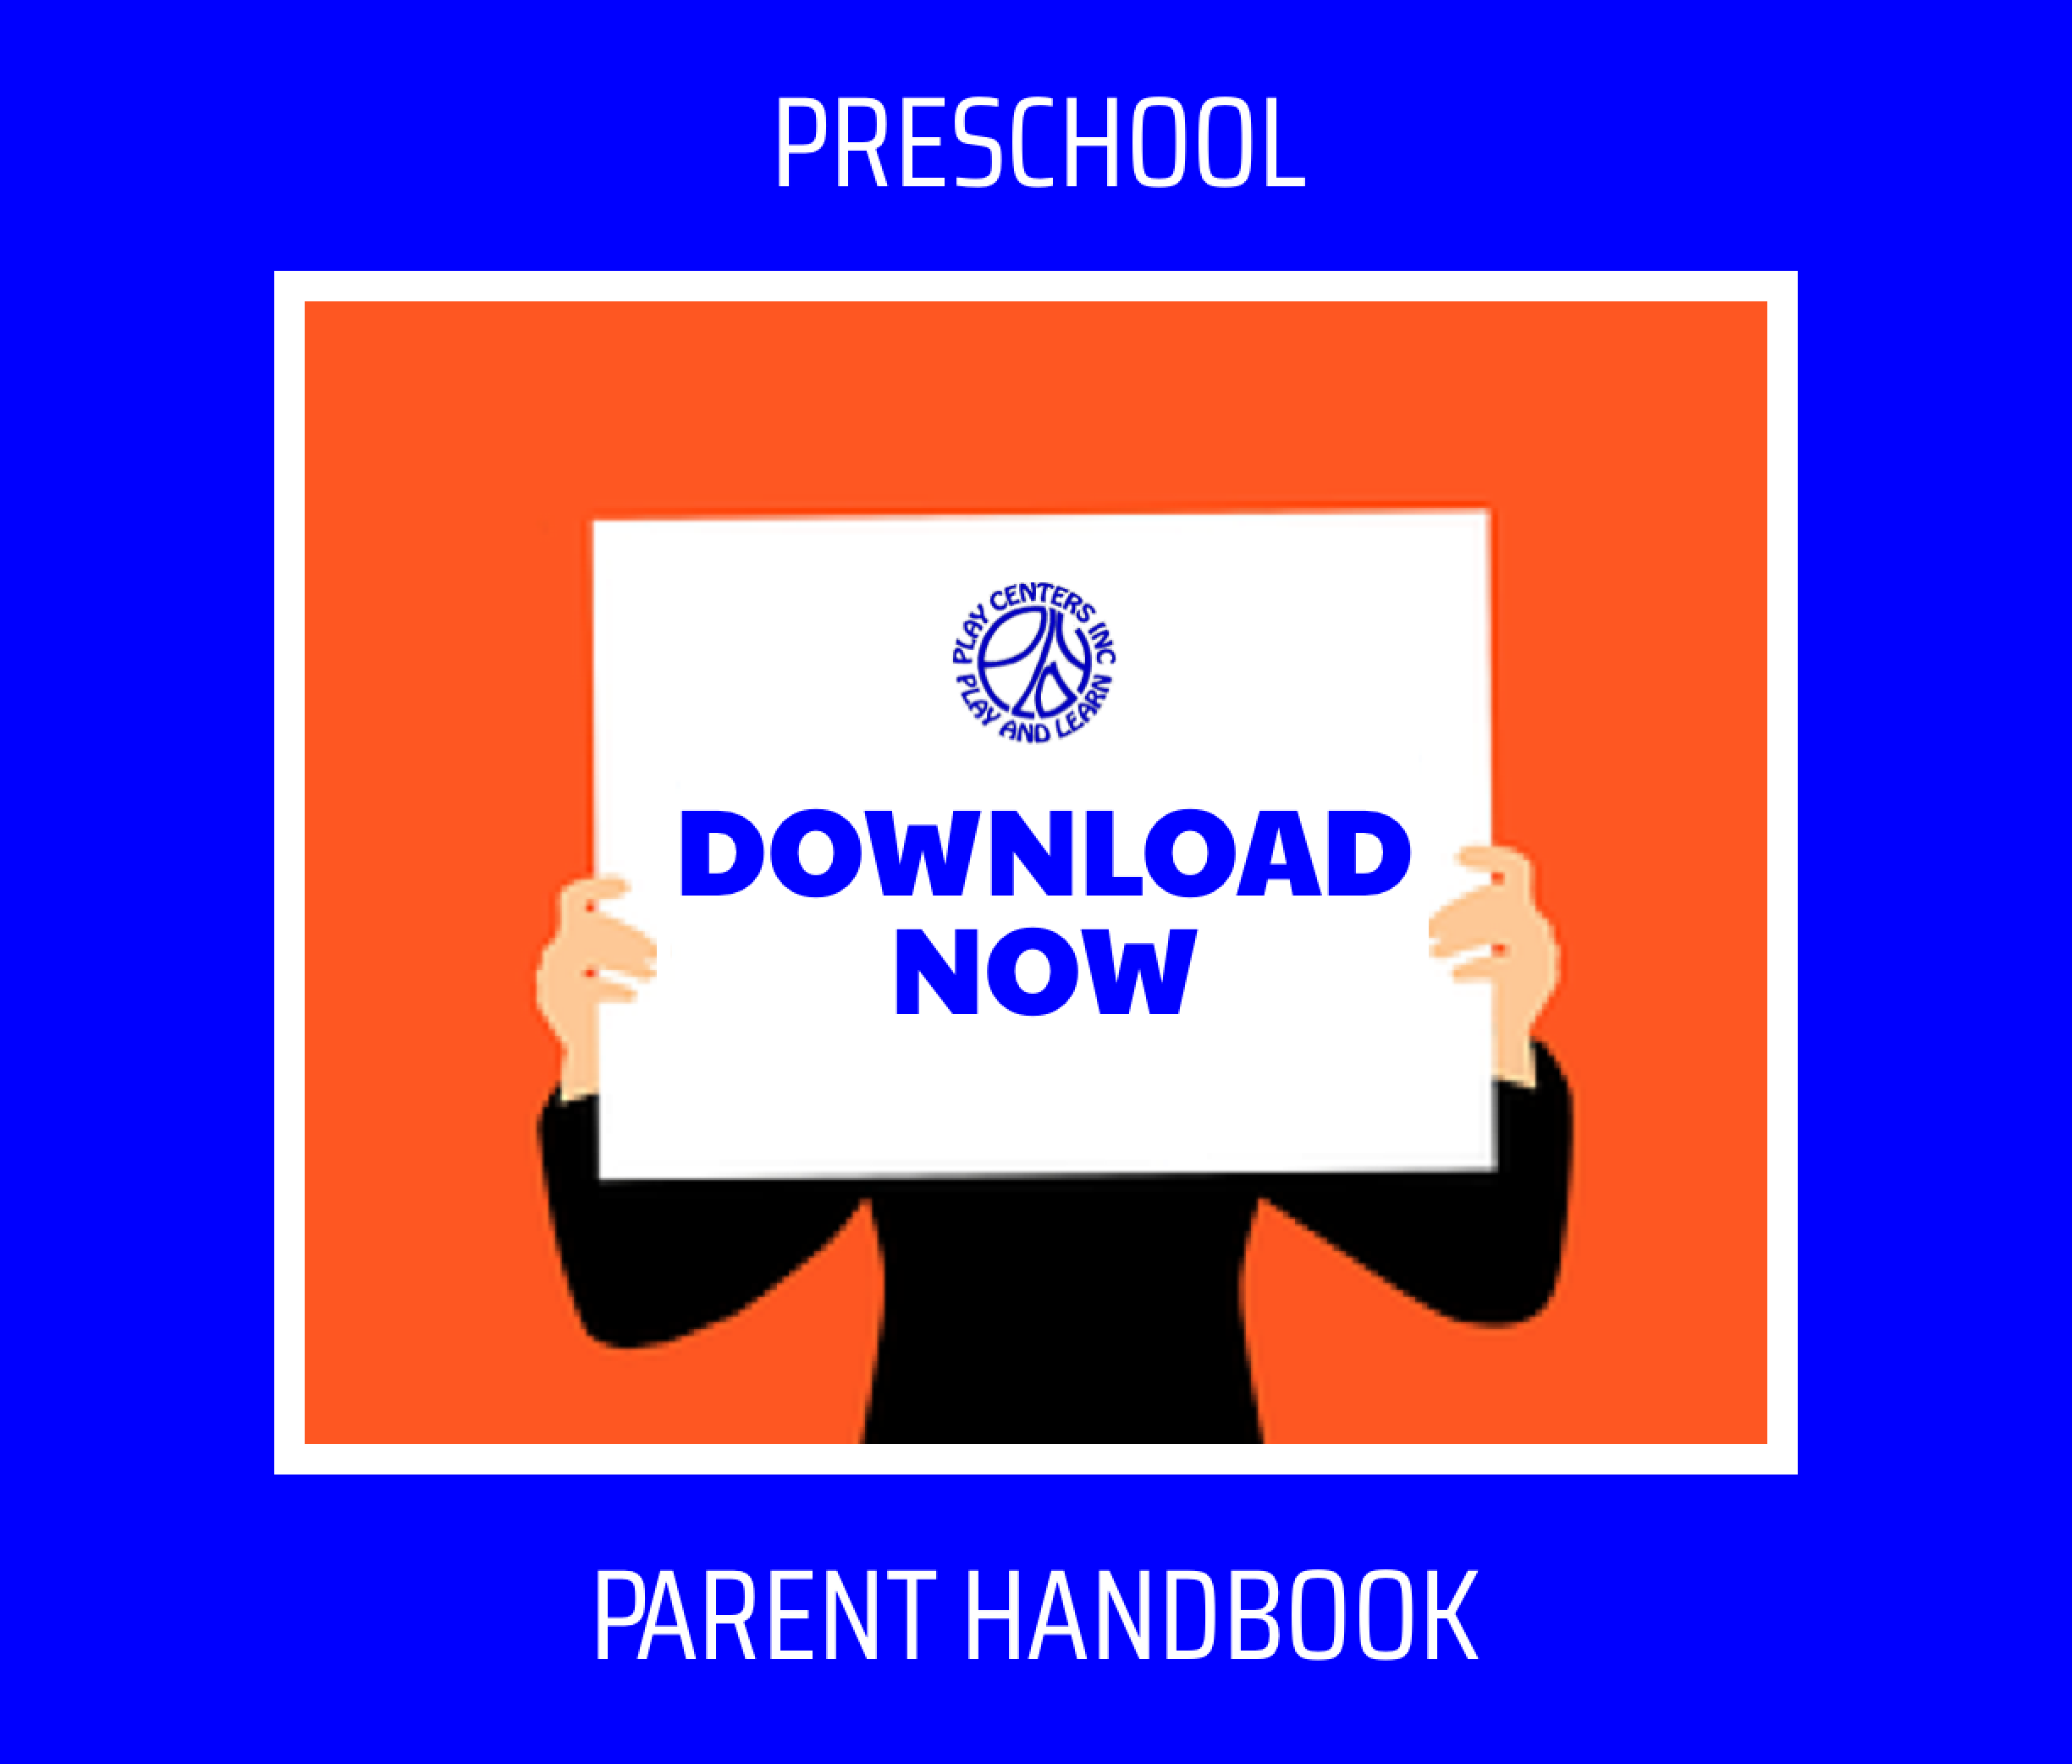 Preschool Handbook "Download now" ad.